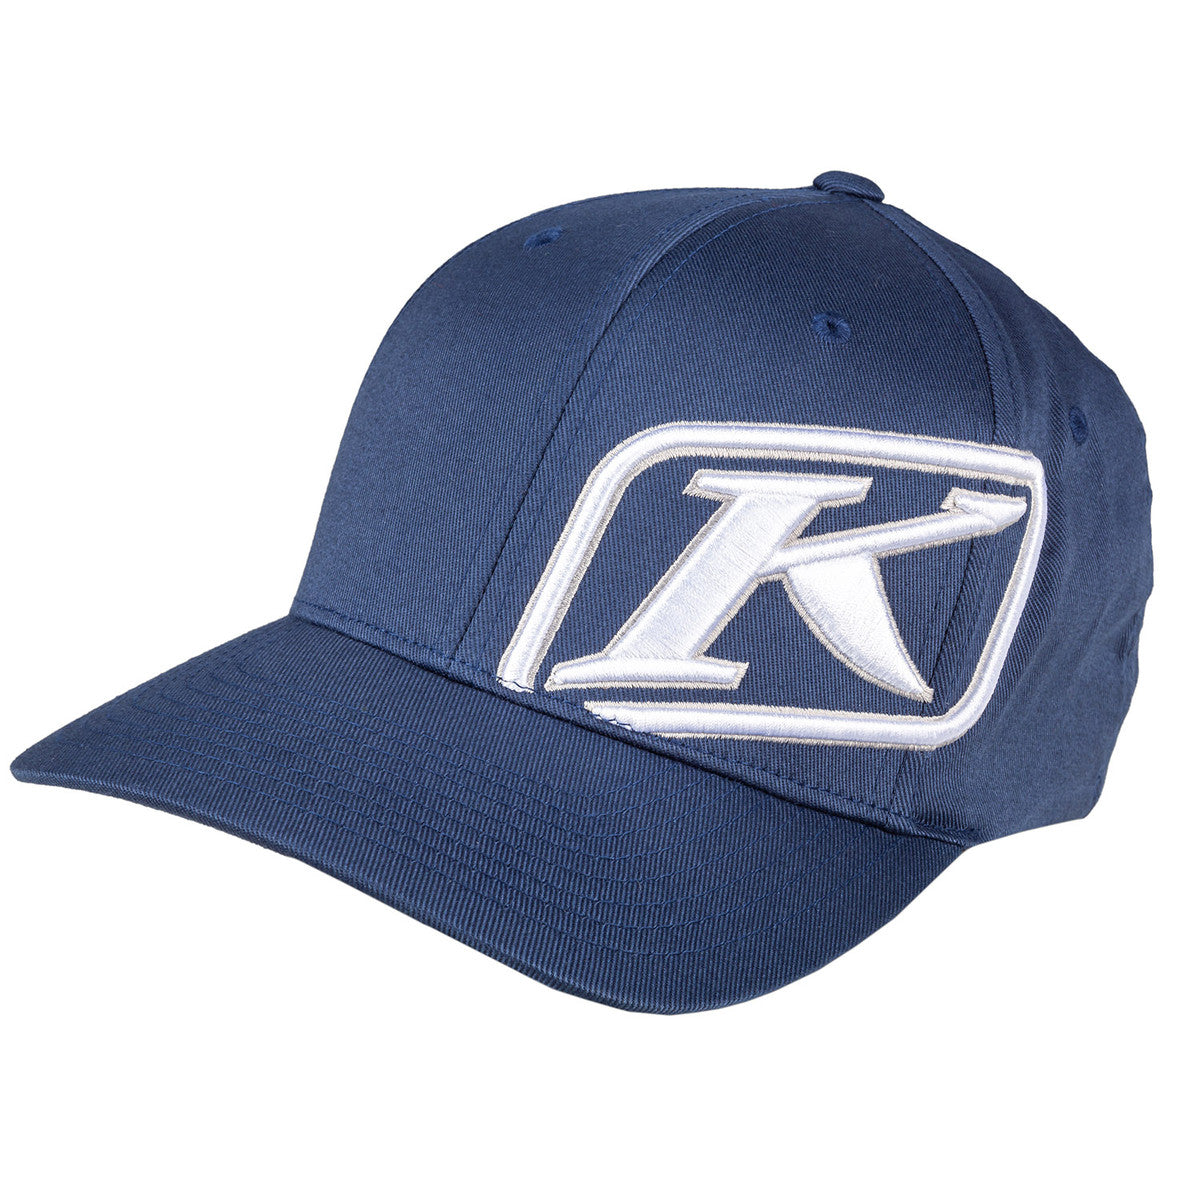 Klim Rider Hat (Non-Current)